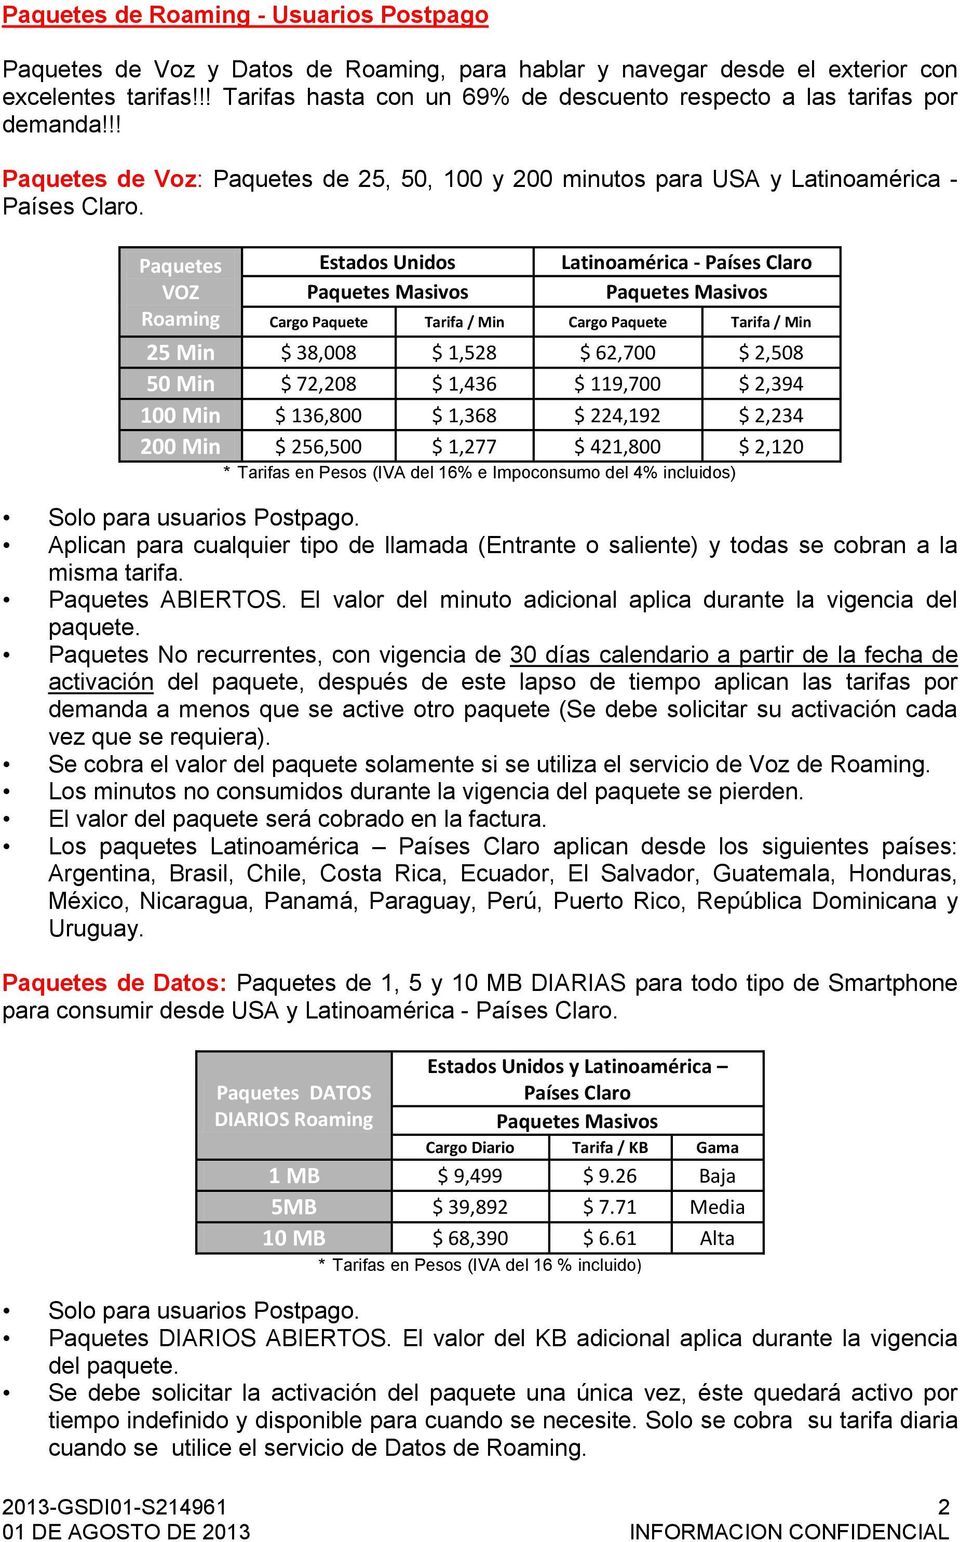 Paquetes VOZ Roaming Estados Unidos Latinoamérica - Países Claro Cargo Paquete Tarifa / Min Cargo Paquete Tarifa / Min 25 Min $ 38,008 $ 1,528 $ 62,700 $ 2,508 50 Min $ 72,208 $ 1,436 $ 119,700 $